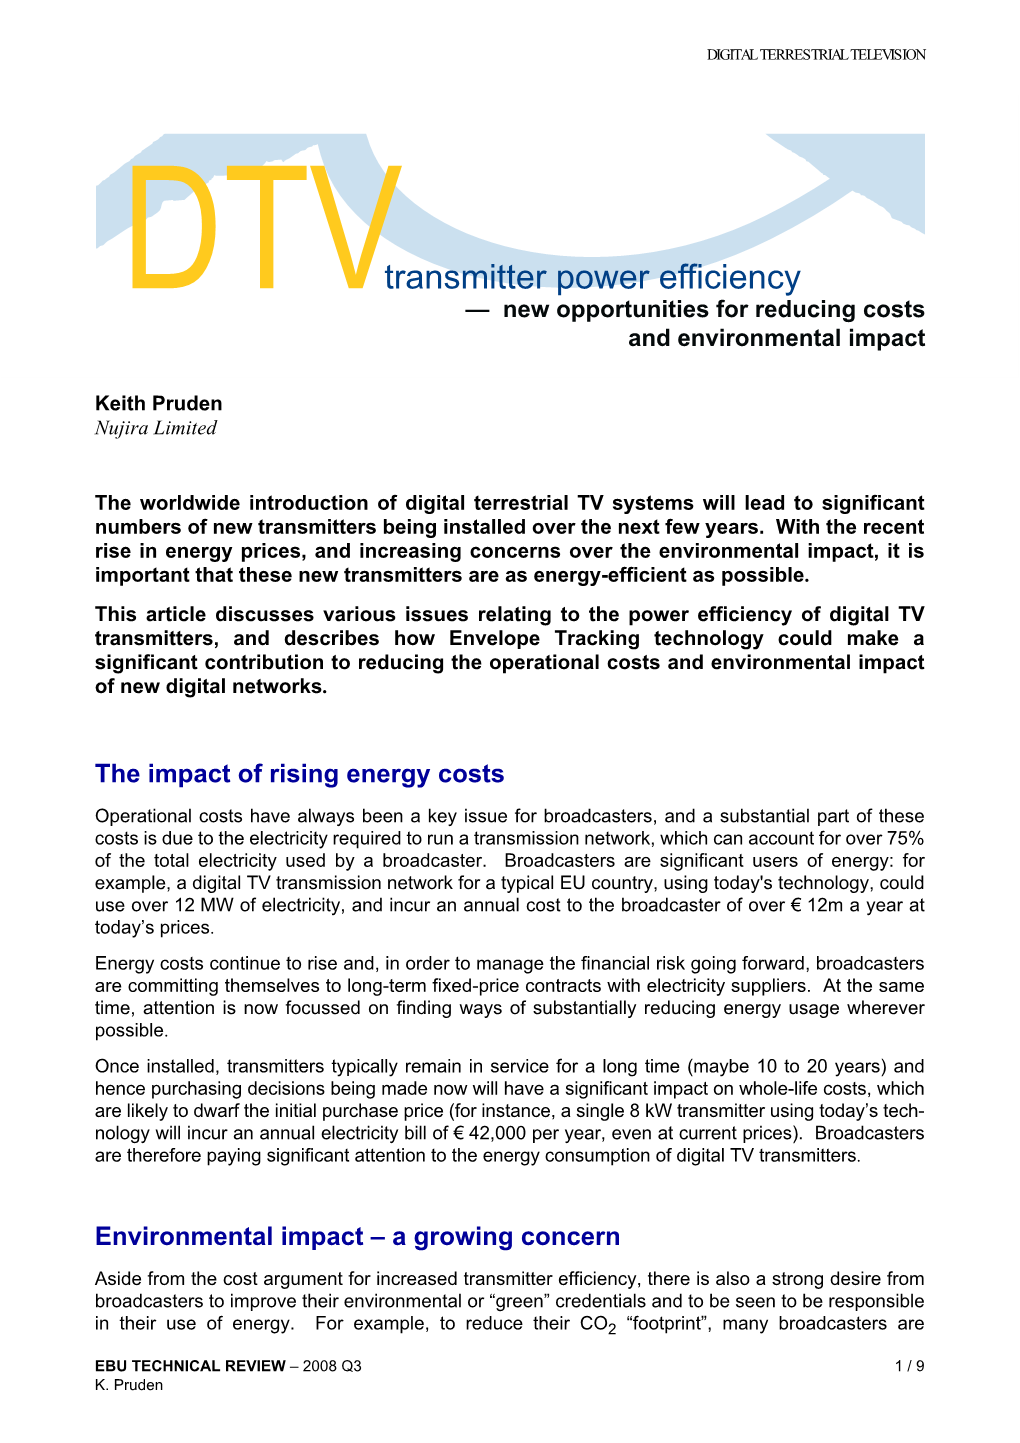 DTV Transmitter Power Efficiency